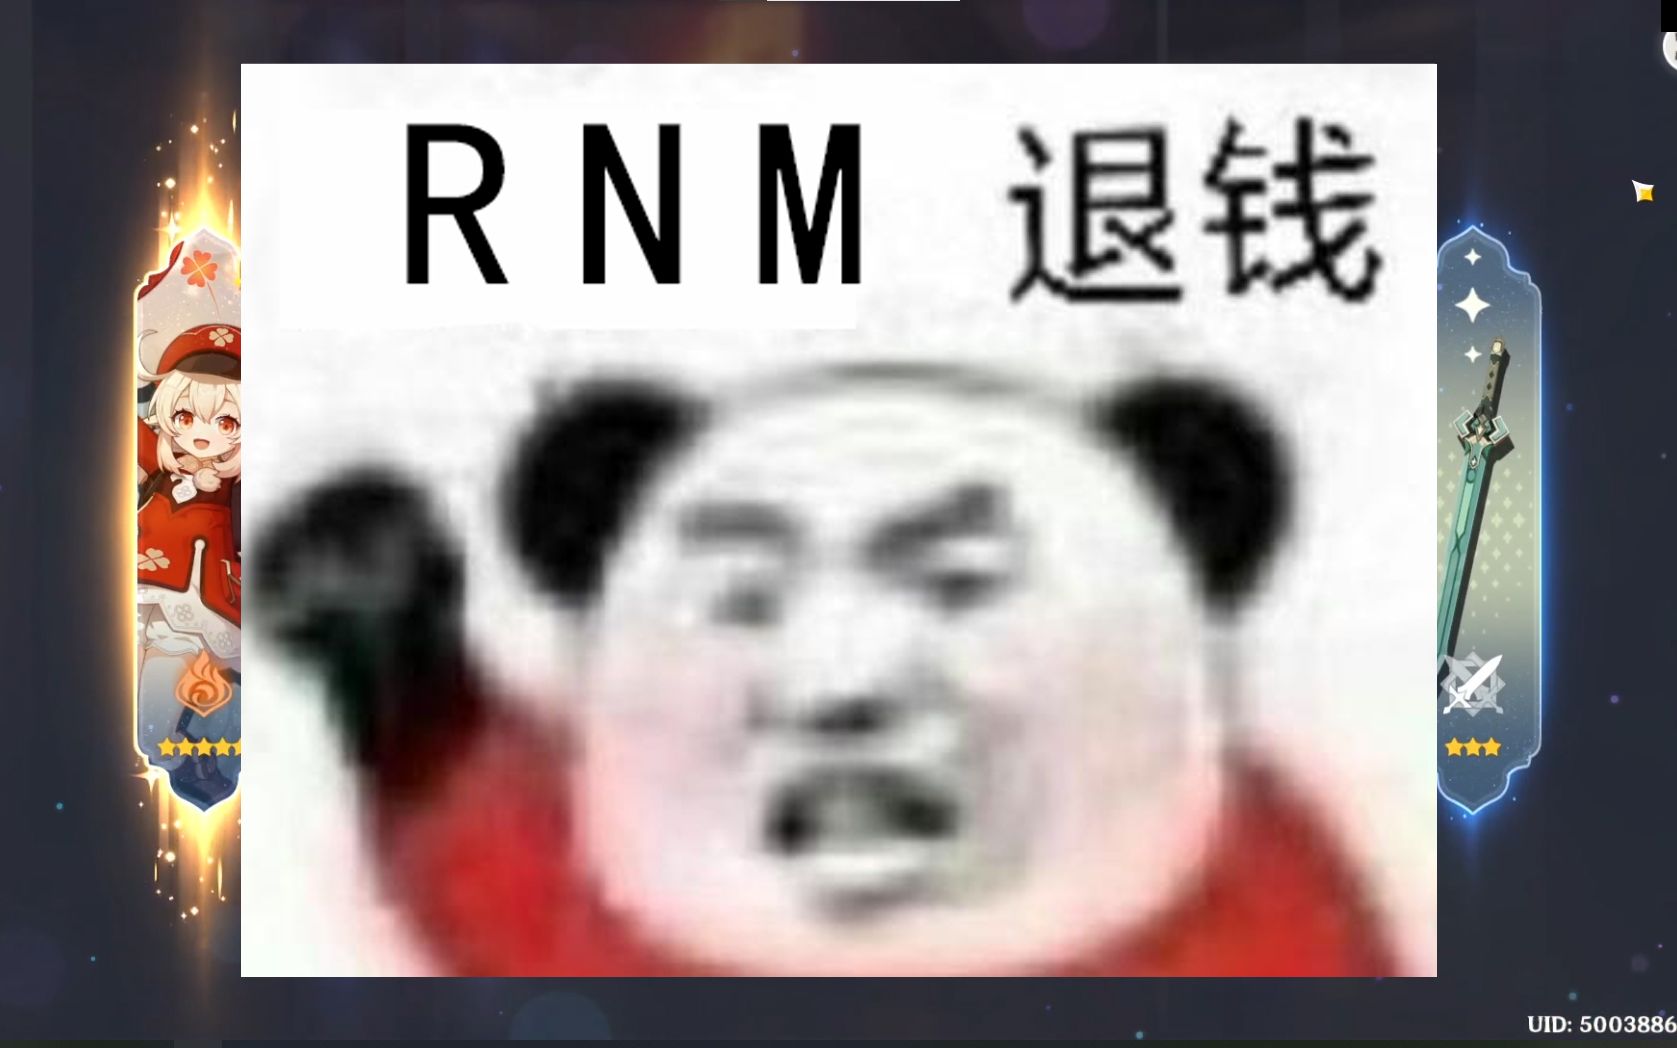 rnm退钱图片表情包图片